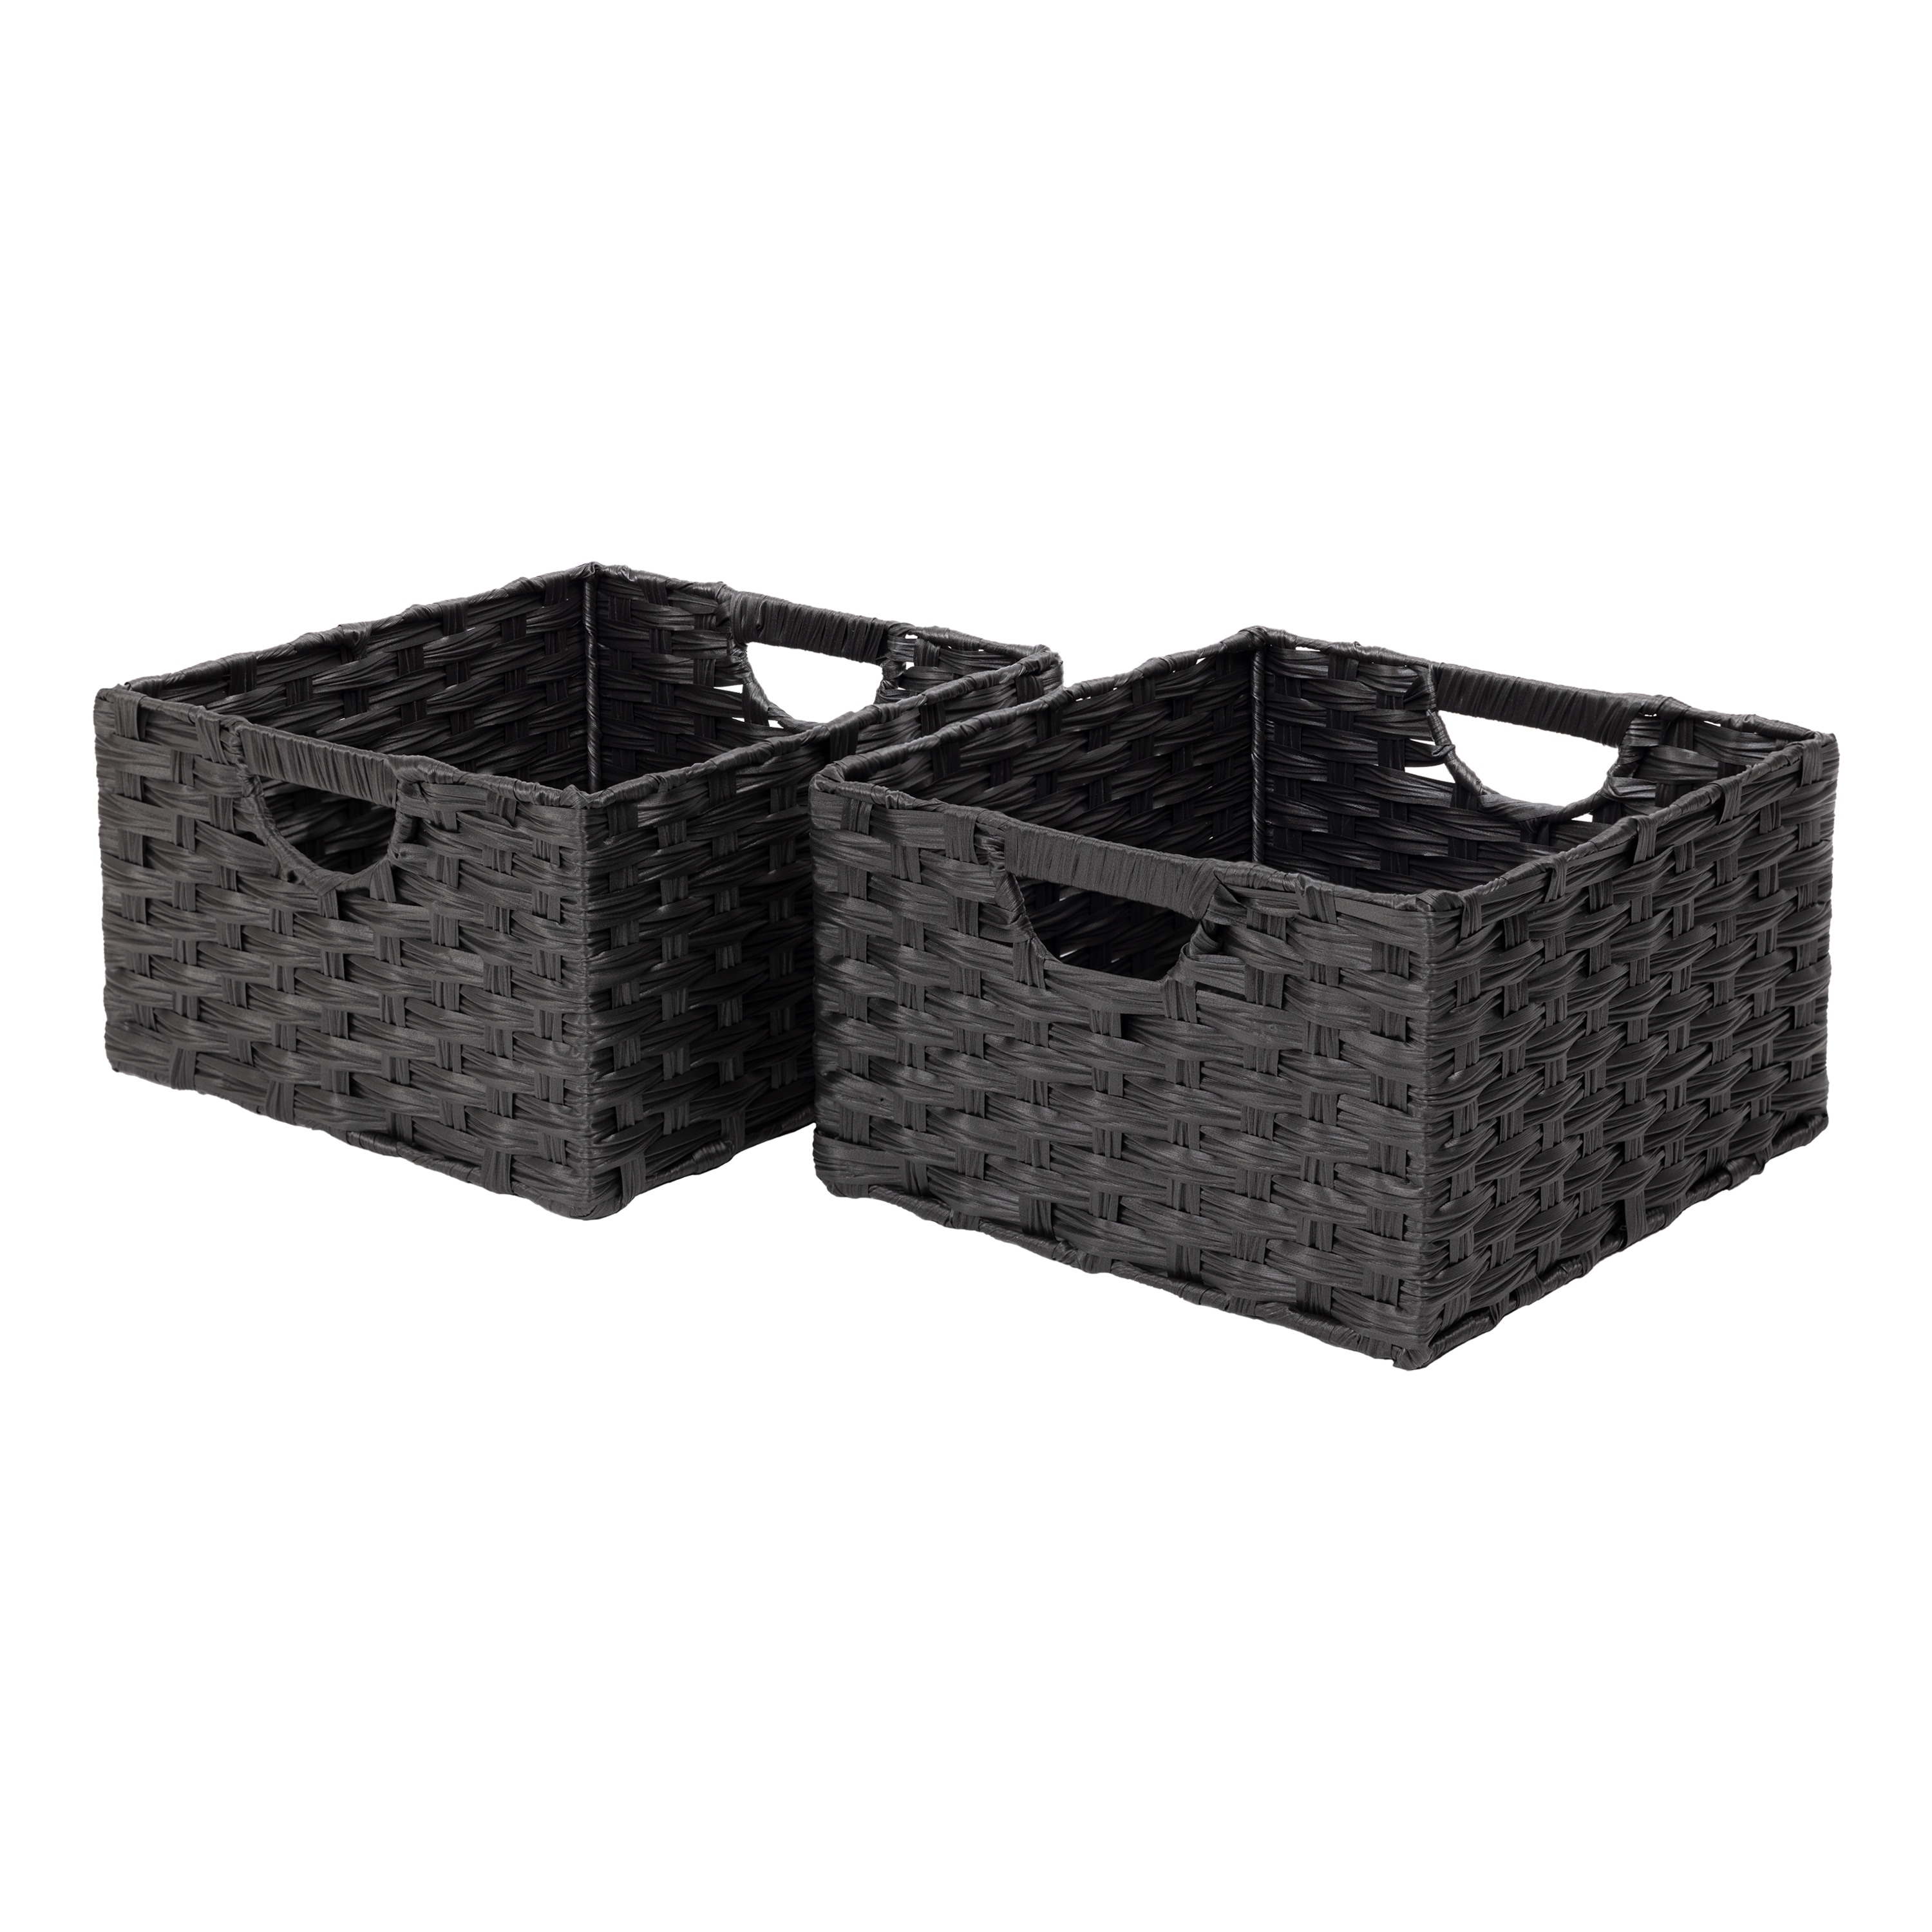 Storage Baskets - Bed Bath & Beyond